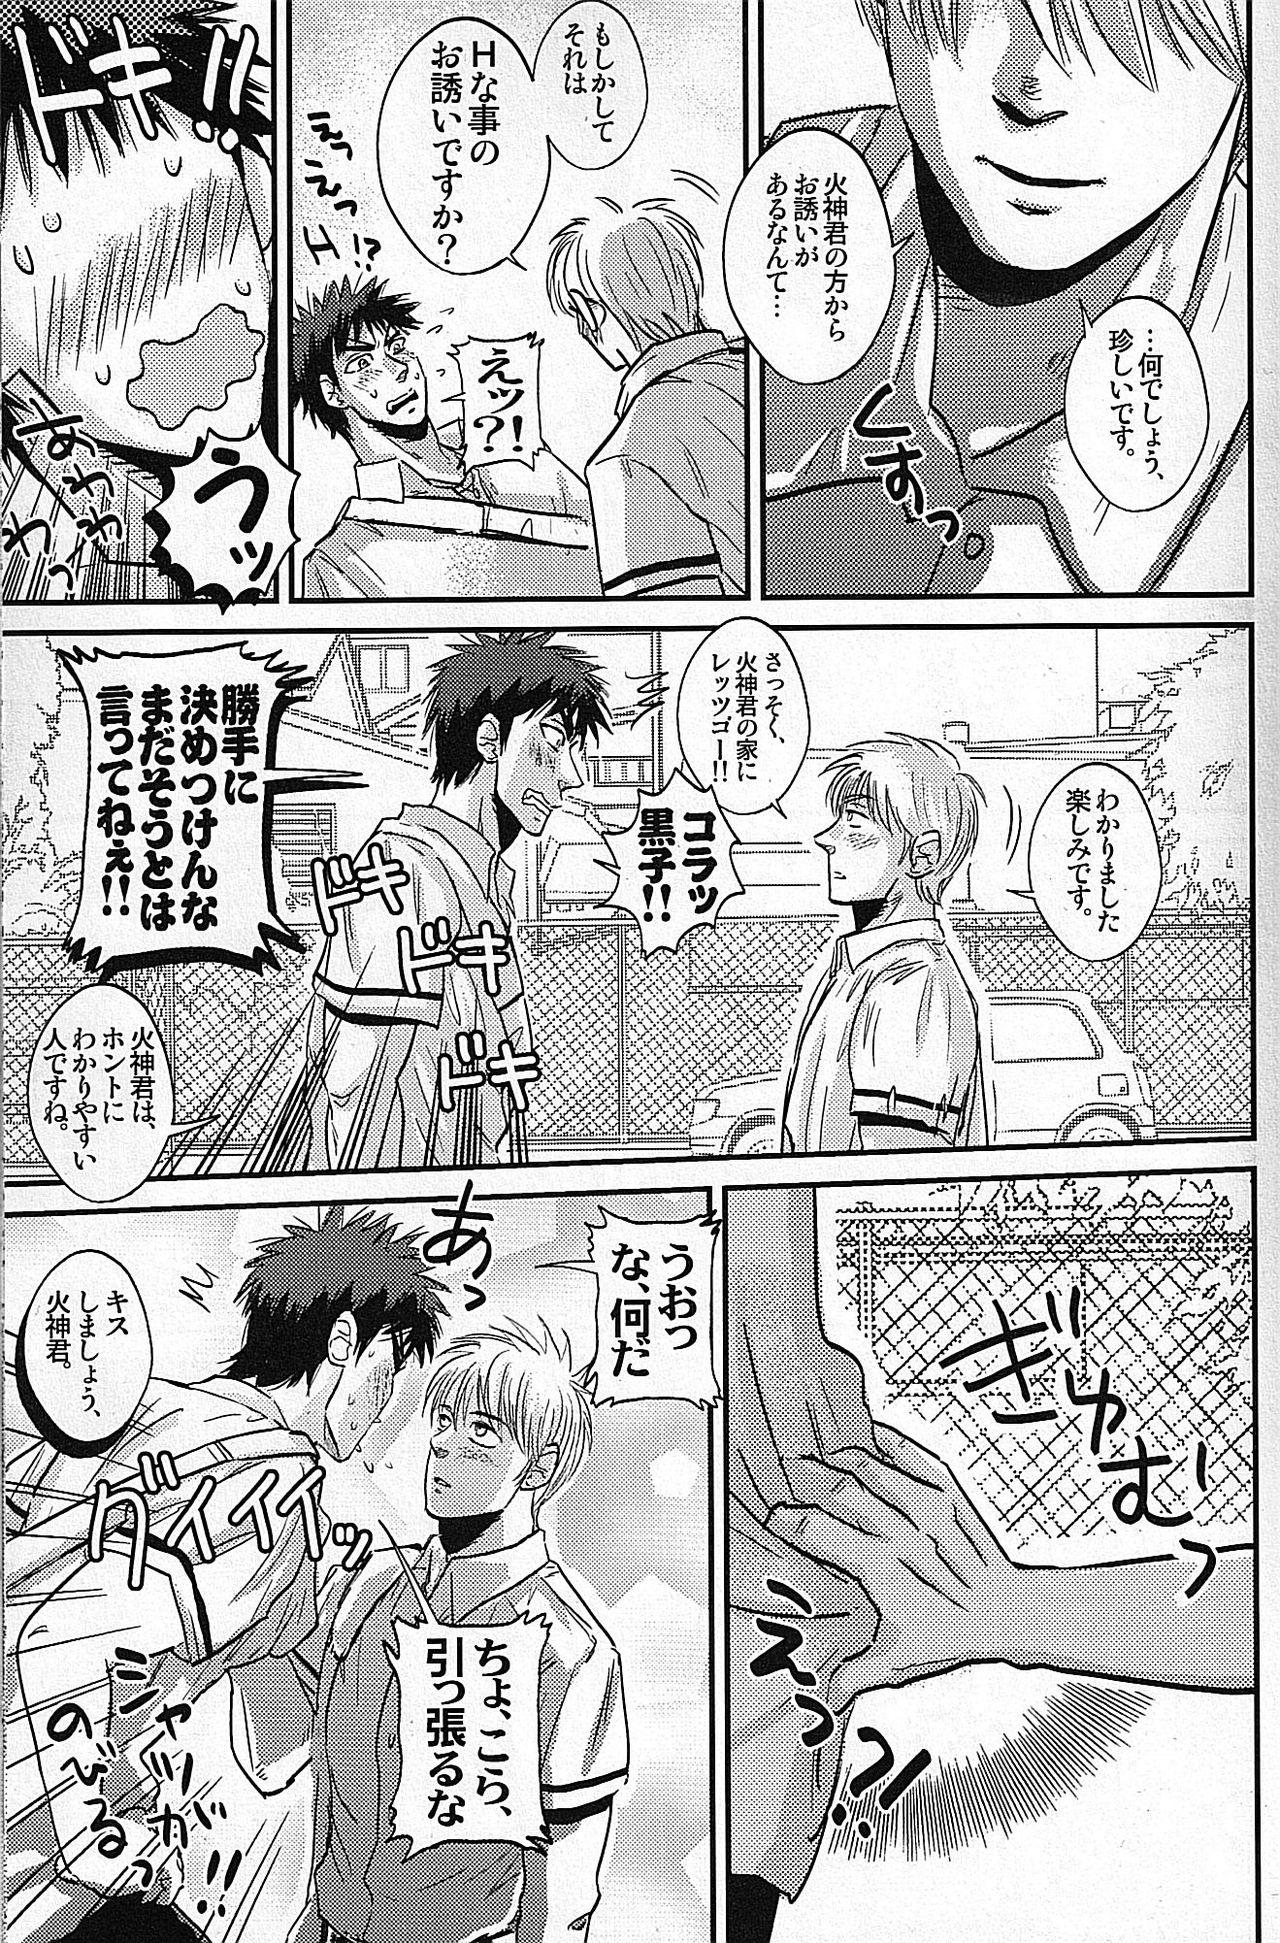 Cheerleader Hi Shinkun no Tori Setsu. - Kuroko no basuke White Girl - Page 4